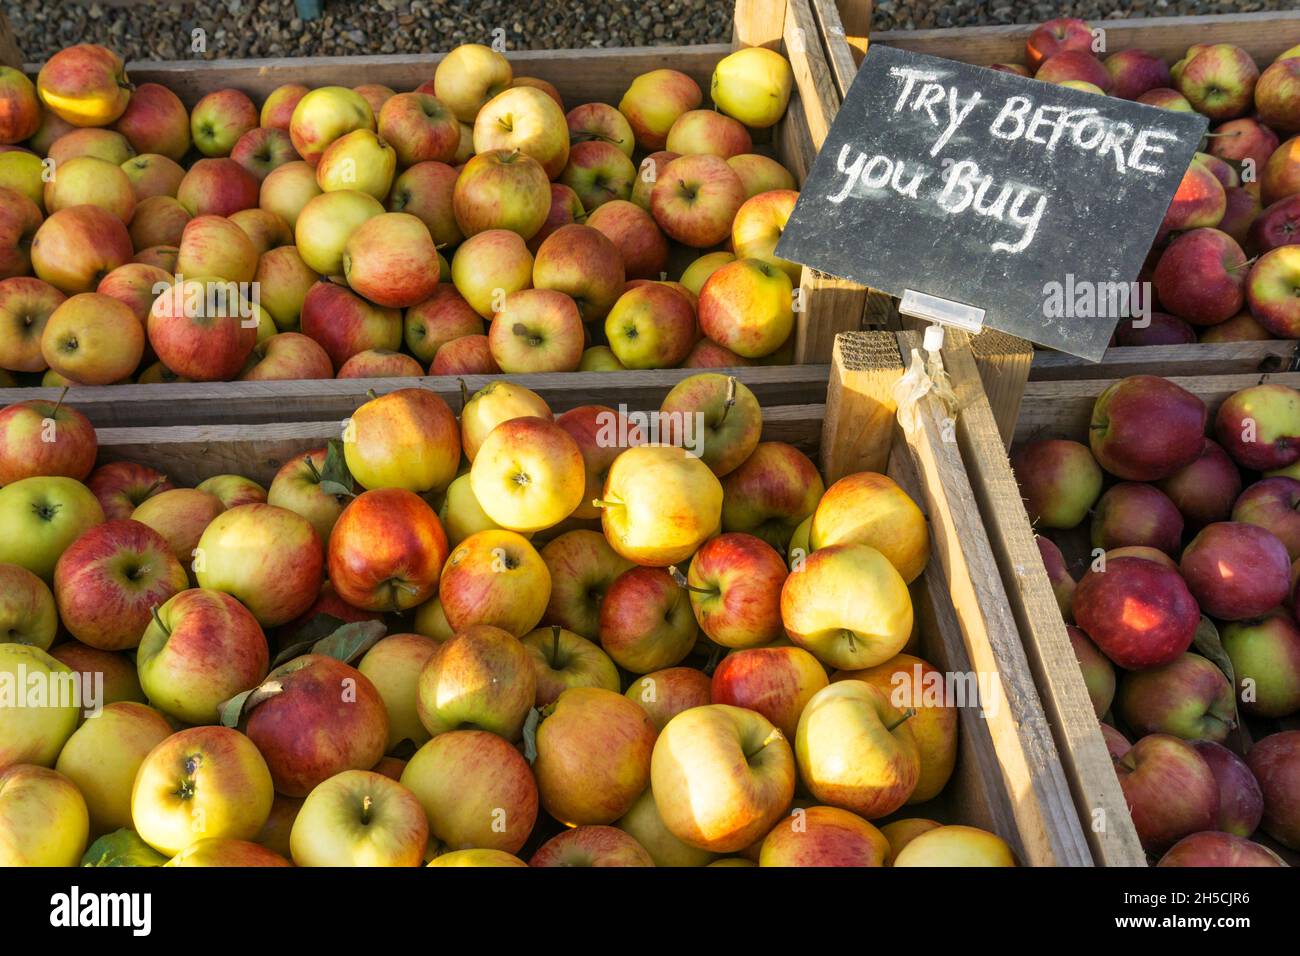 Pruebe antes de comprar el cartel en cajas de manzanas para la venta en una tienda de granjas de Norfolk. Foto de stock